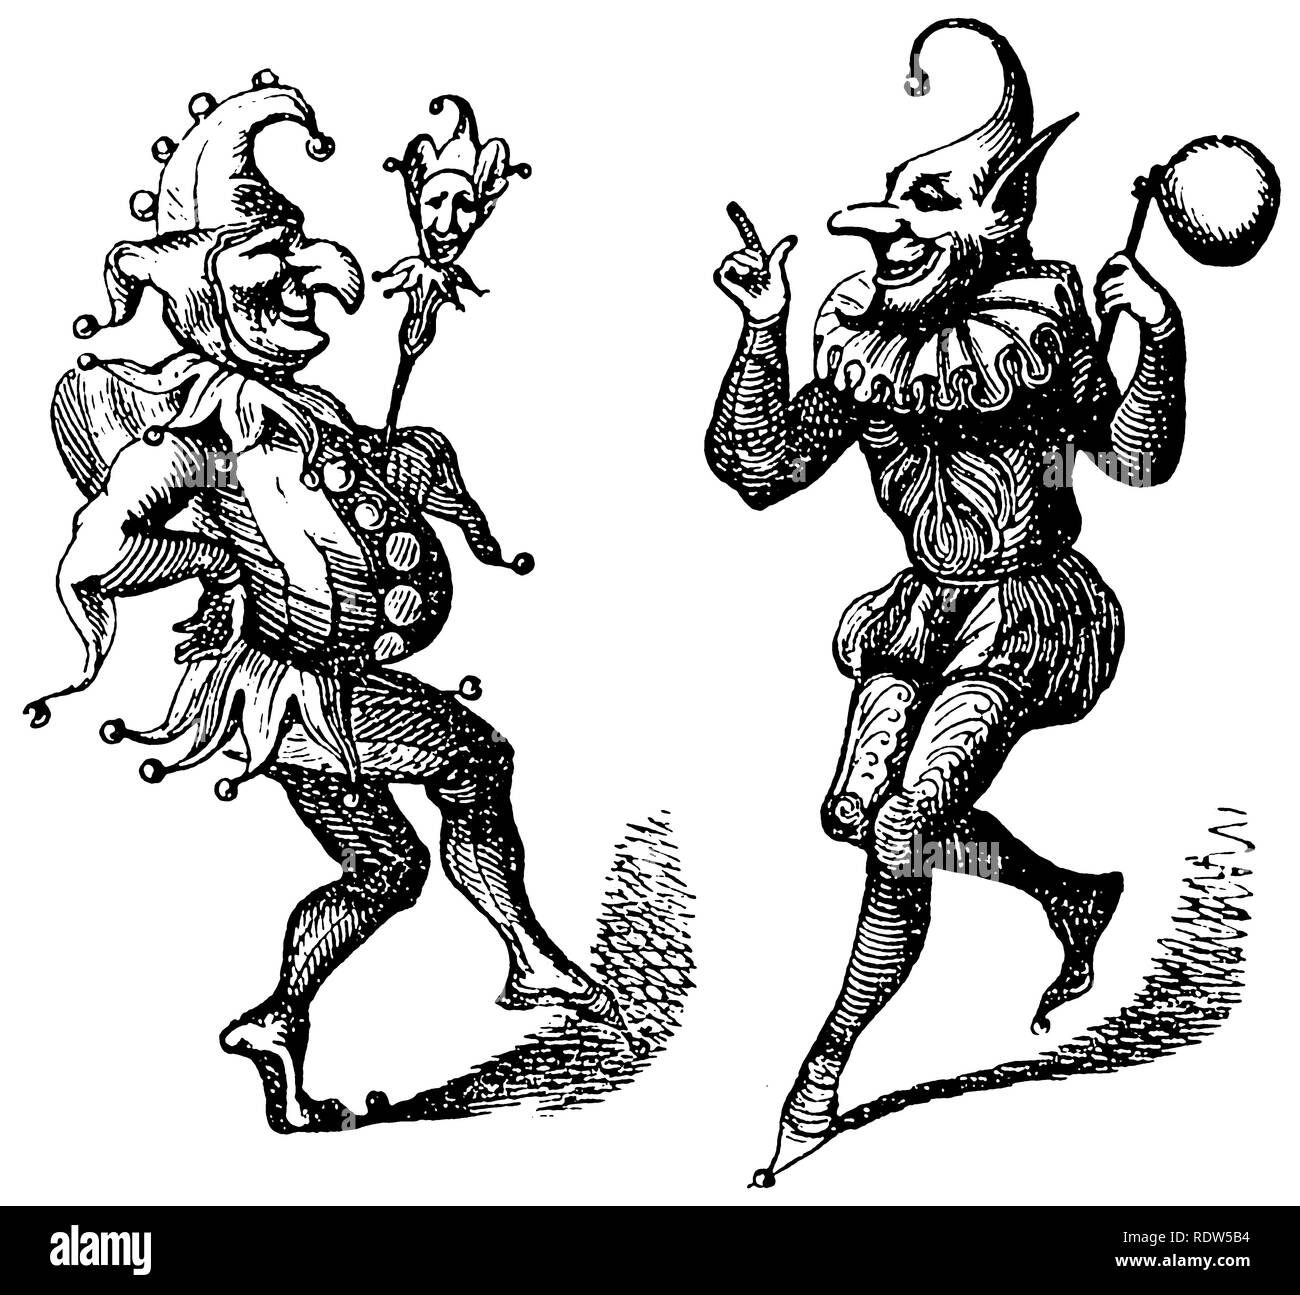 Due Harlequins danzanti, o Jesters, da un taglio di legno vintage venduto come immagine di stock, o stock-block. Foto Stock